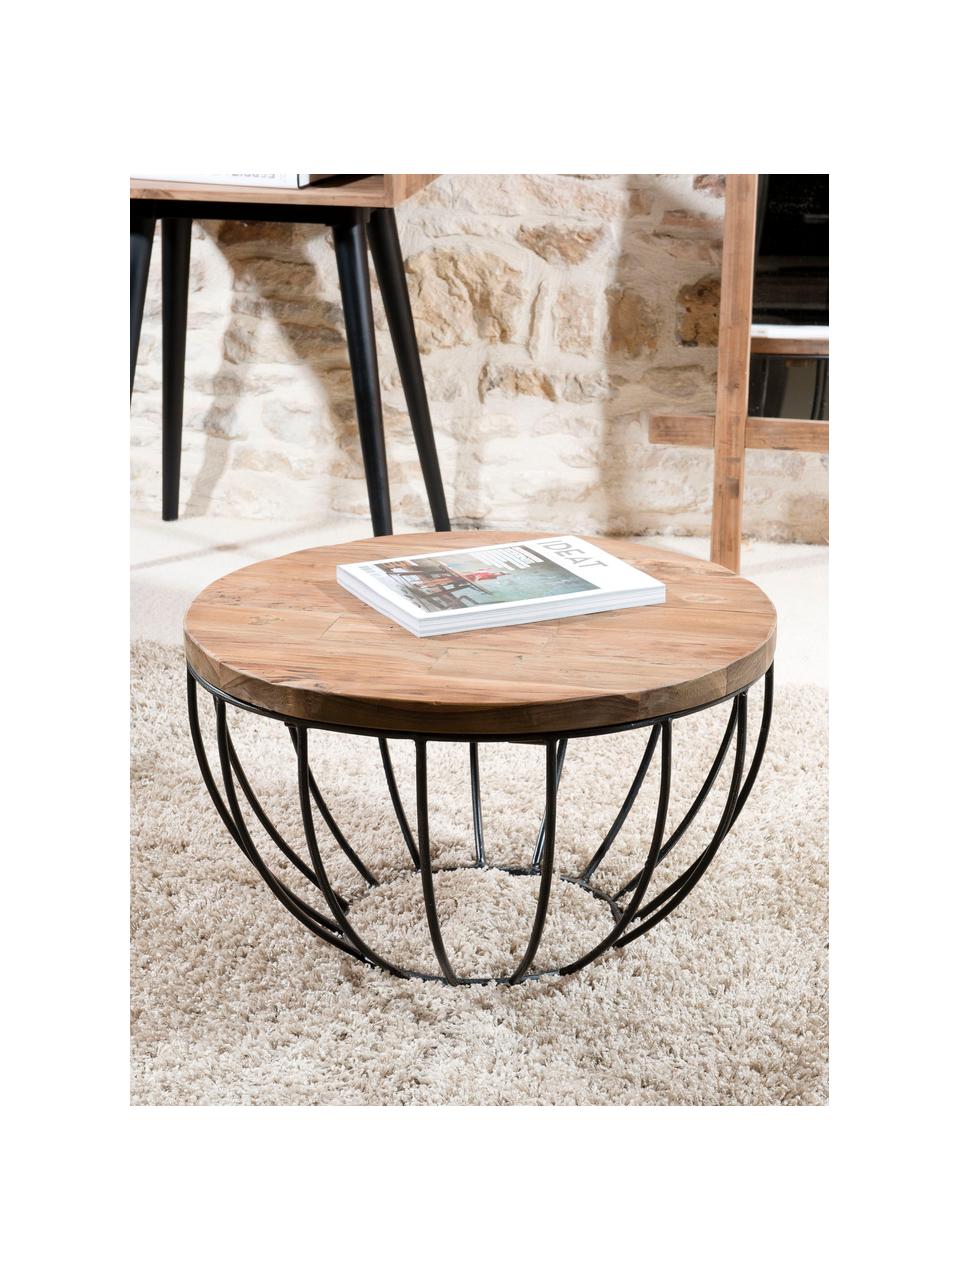 Okrągły stolik kawowy z drewna tekowego Sixtine, Blat: drewno tekowe, Stelaż: metal lakierowany, Drewno tekowe, czarny, Ø 60 x W 35 cm